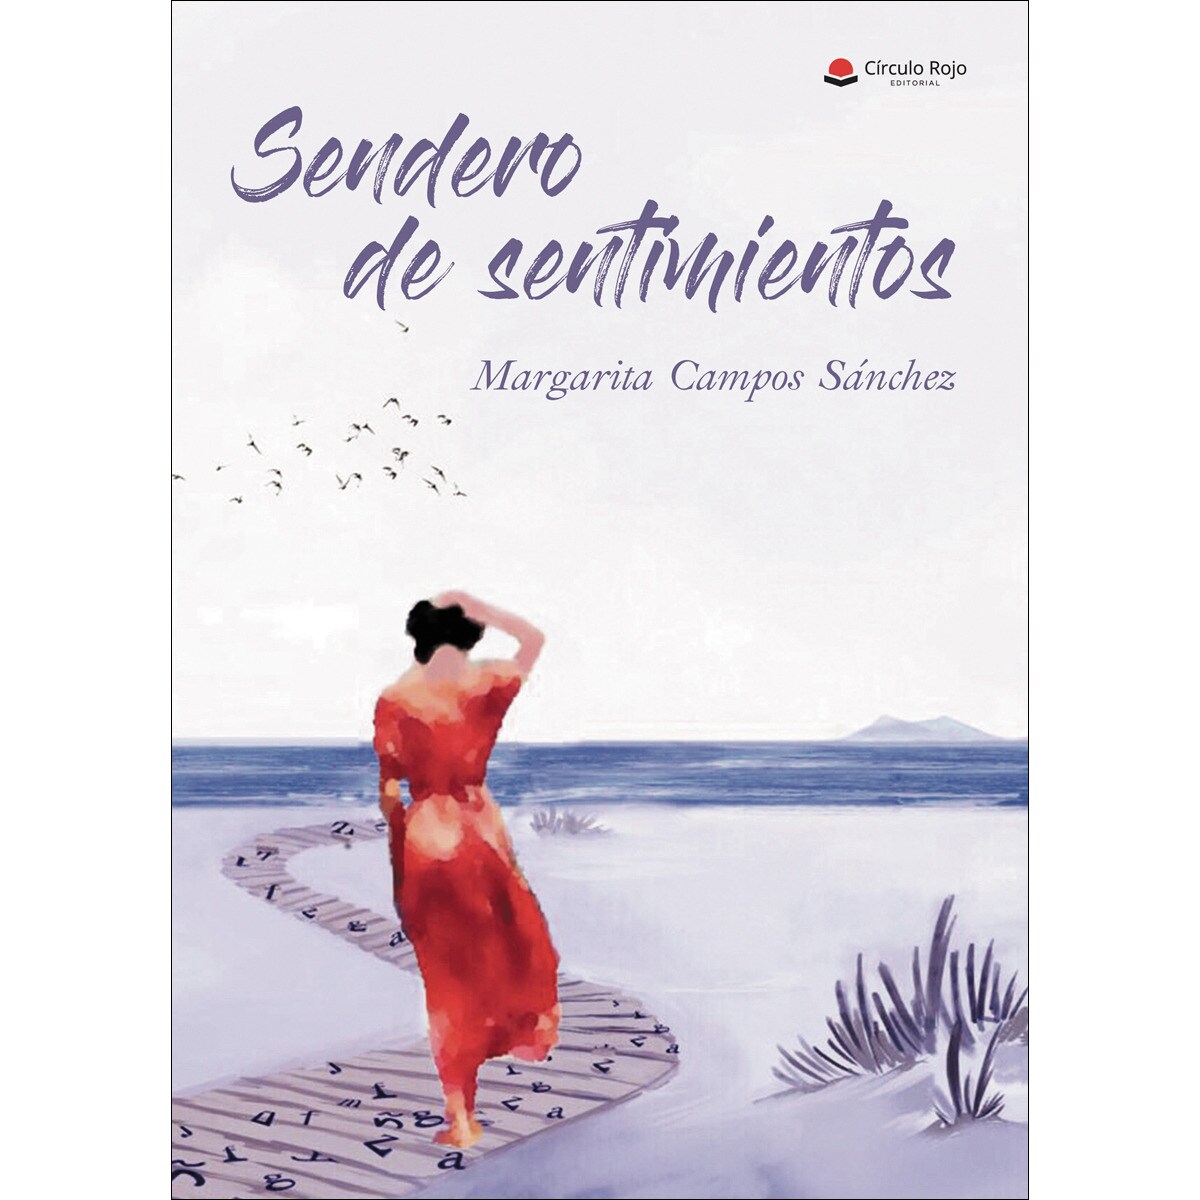 SENDEROS DE SENTIMIENTOS (Círculo Rojo 2019)